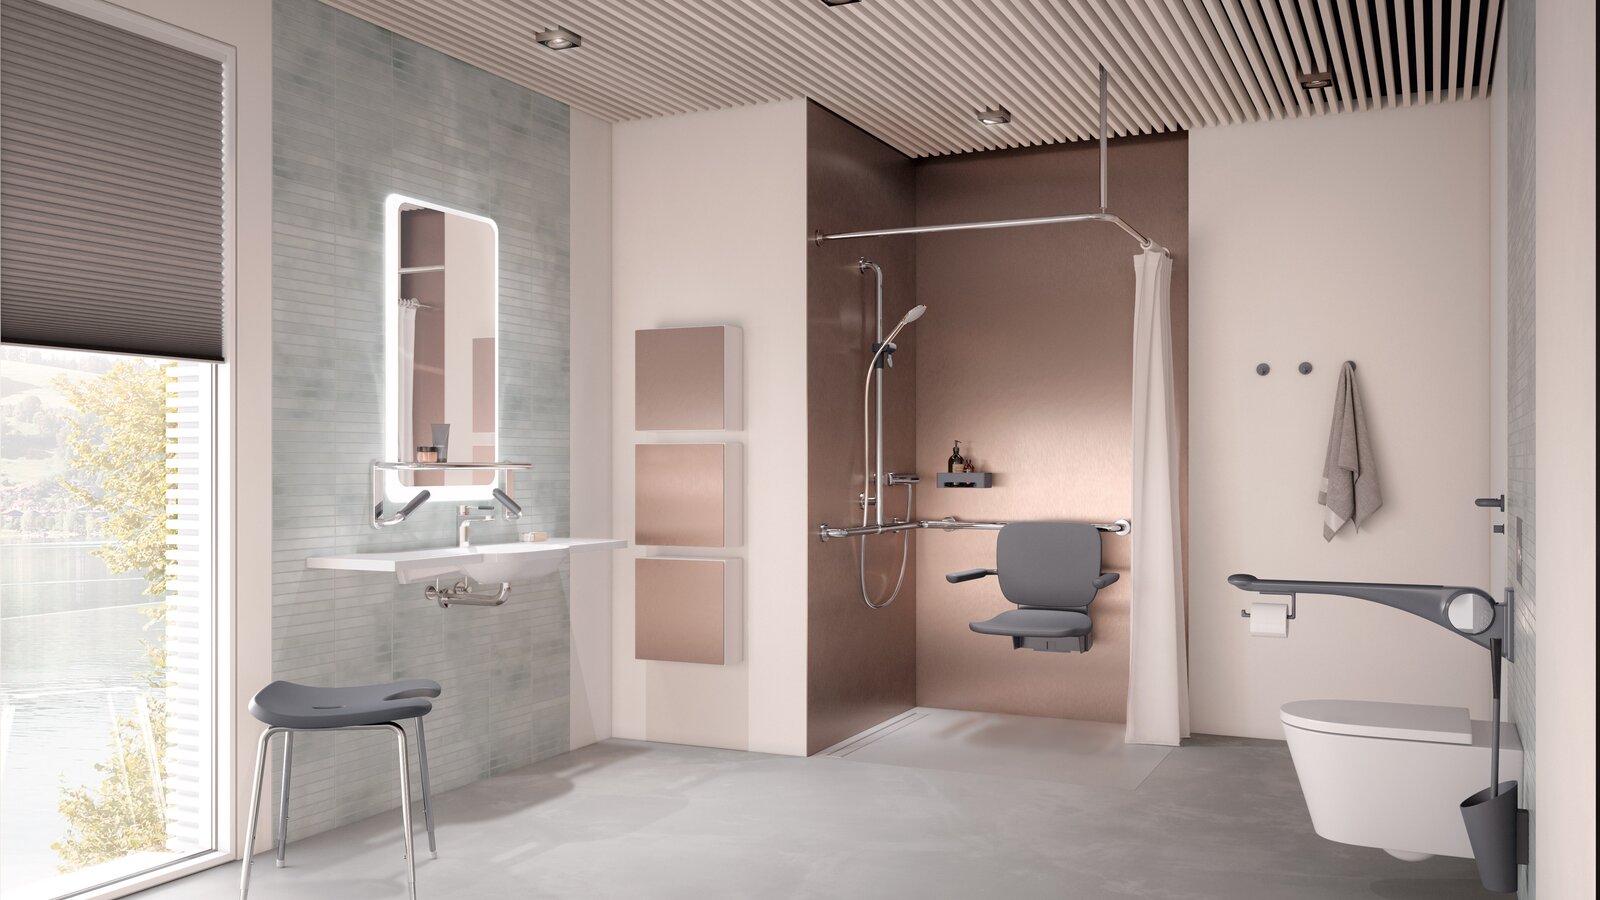 Barrierefreies Pflegebad mit Waschplatz, Duschbereich und WC ausgestattet mit HEWI LiftSystem in Anthrazit matt